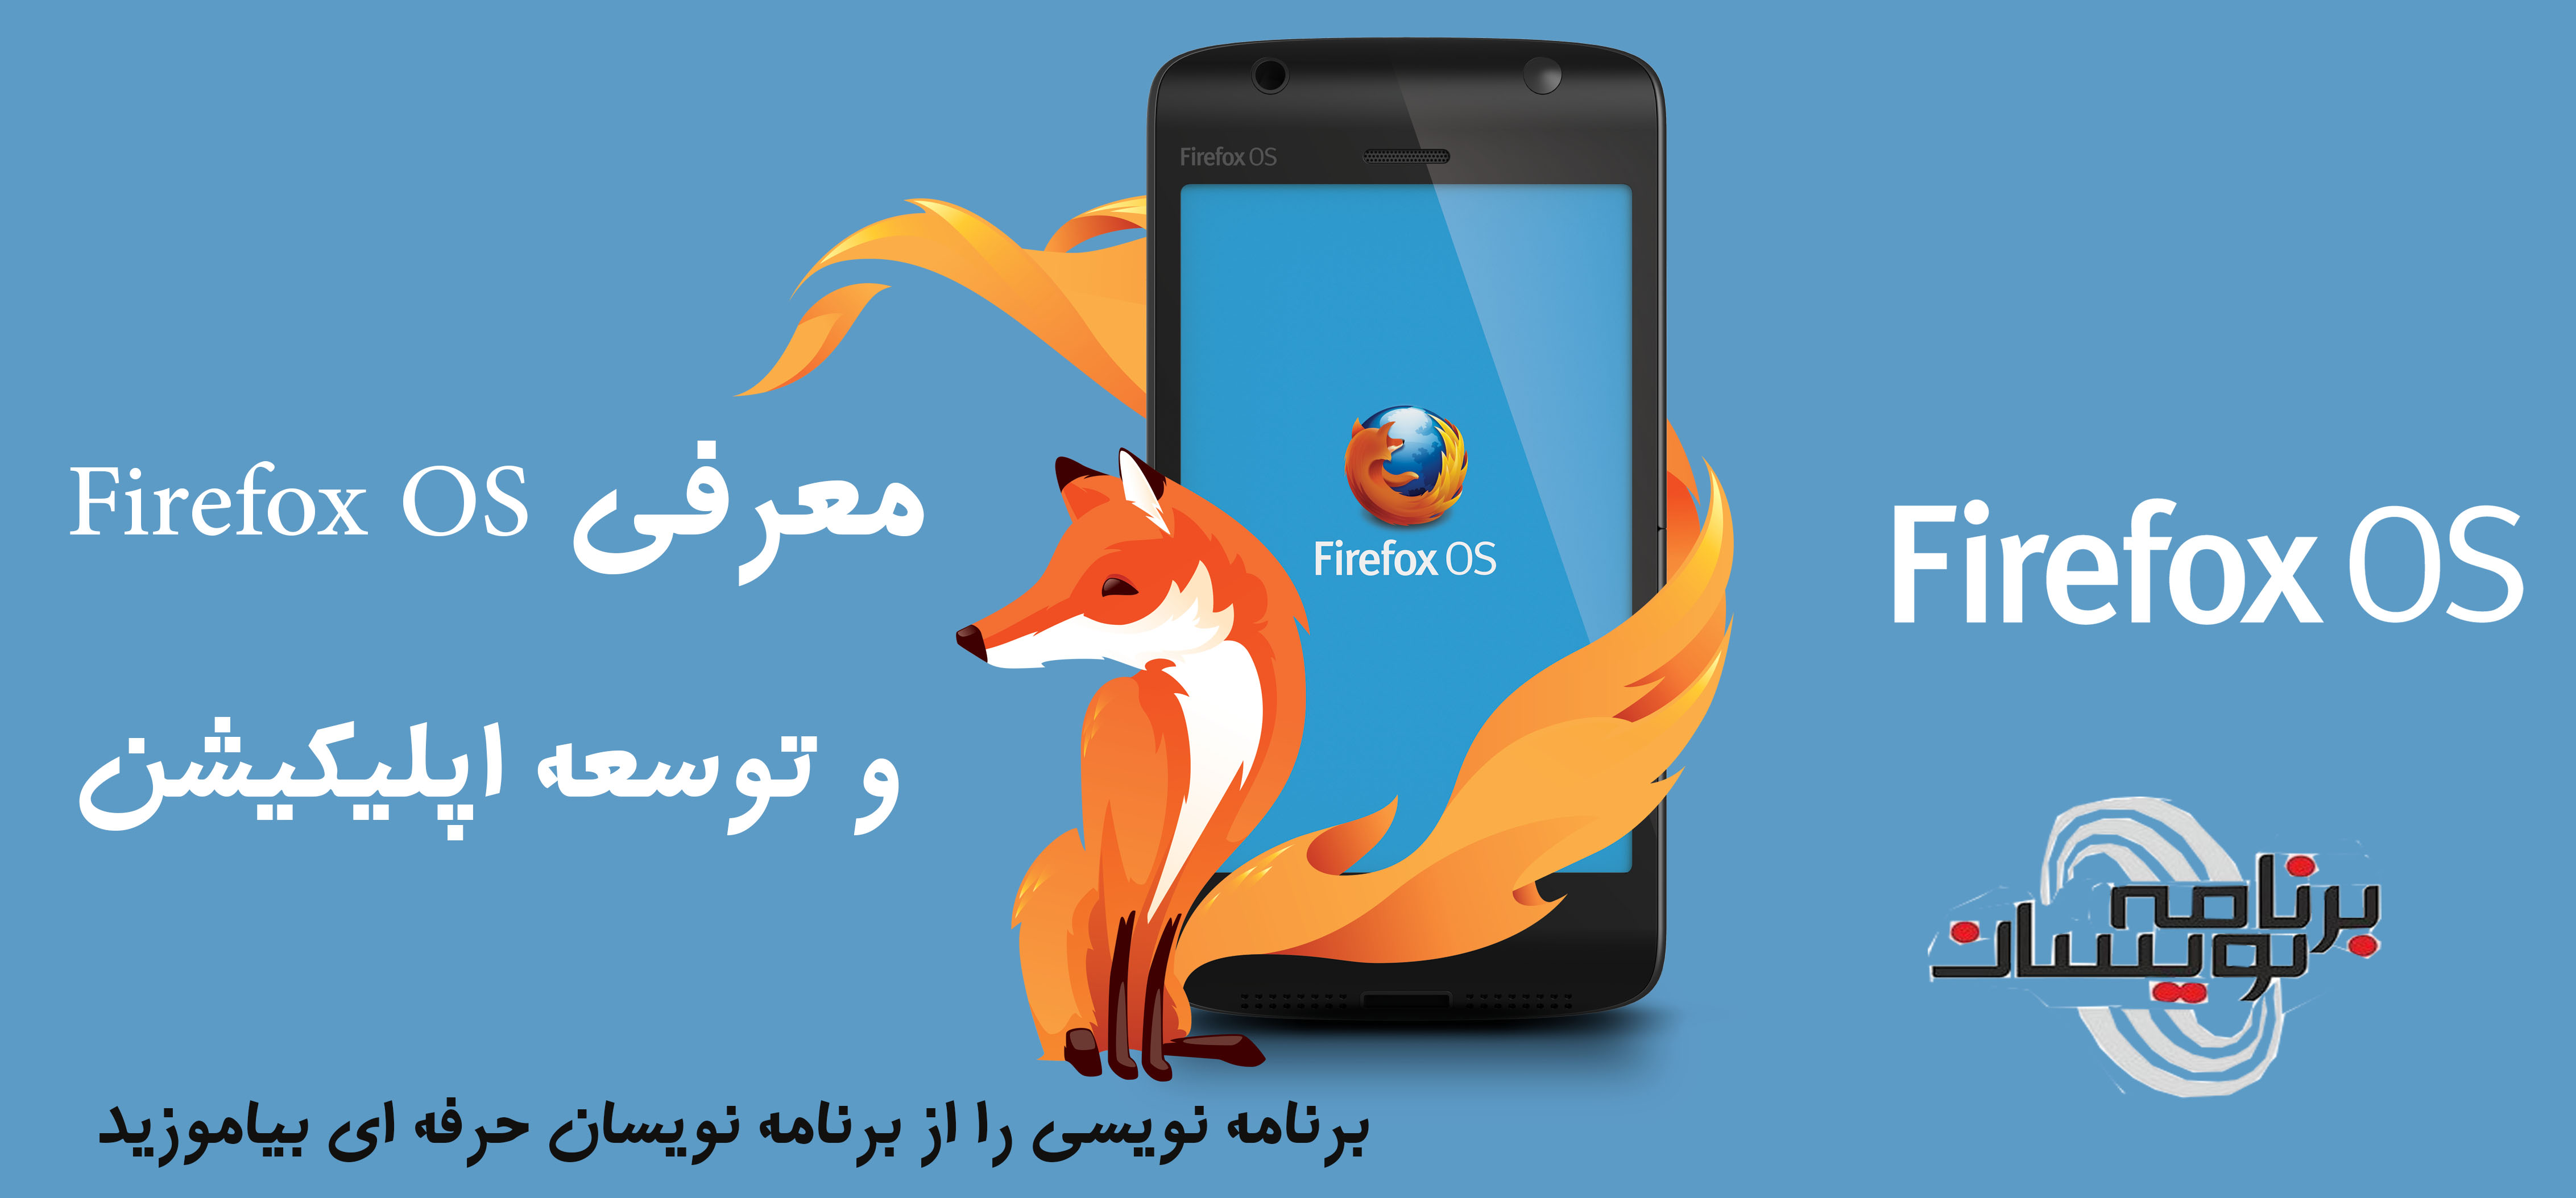 معرفی Firefox OS و توسعه اپلیکیشن